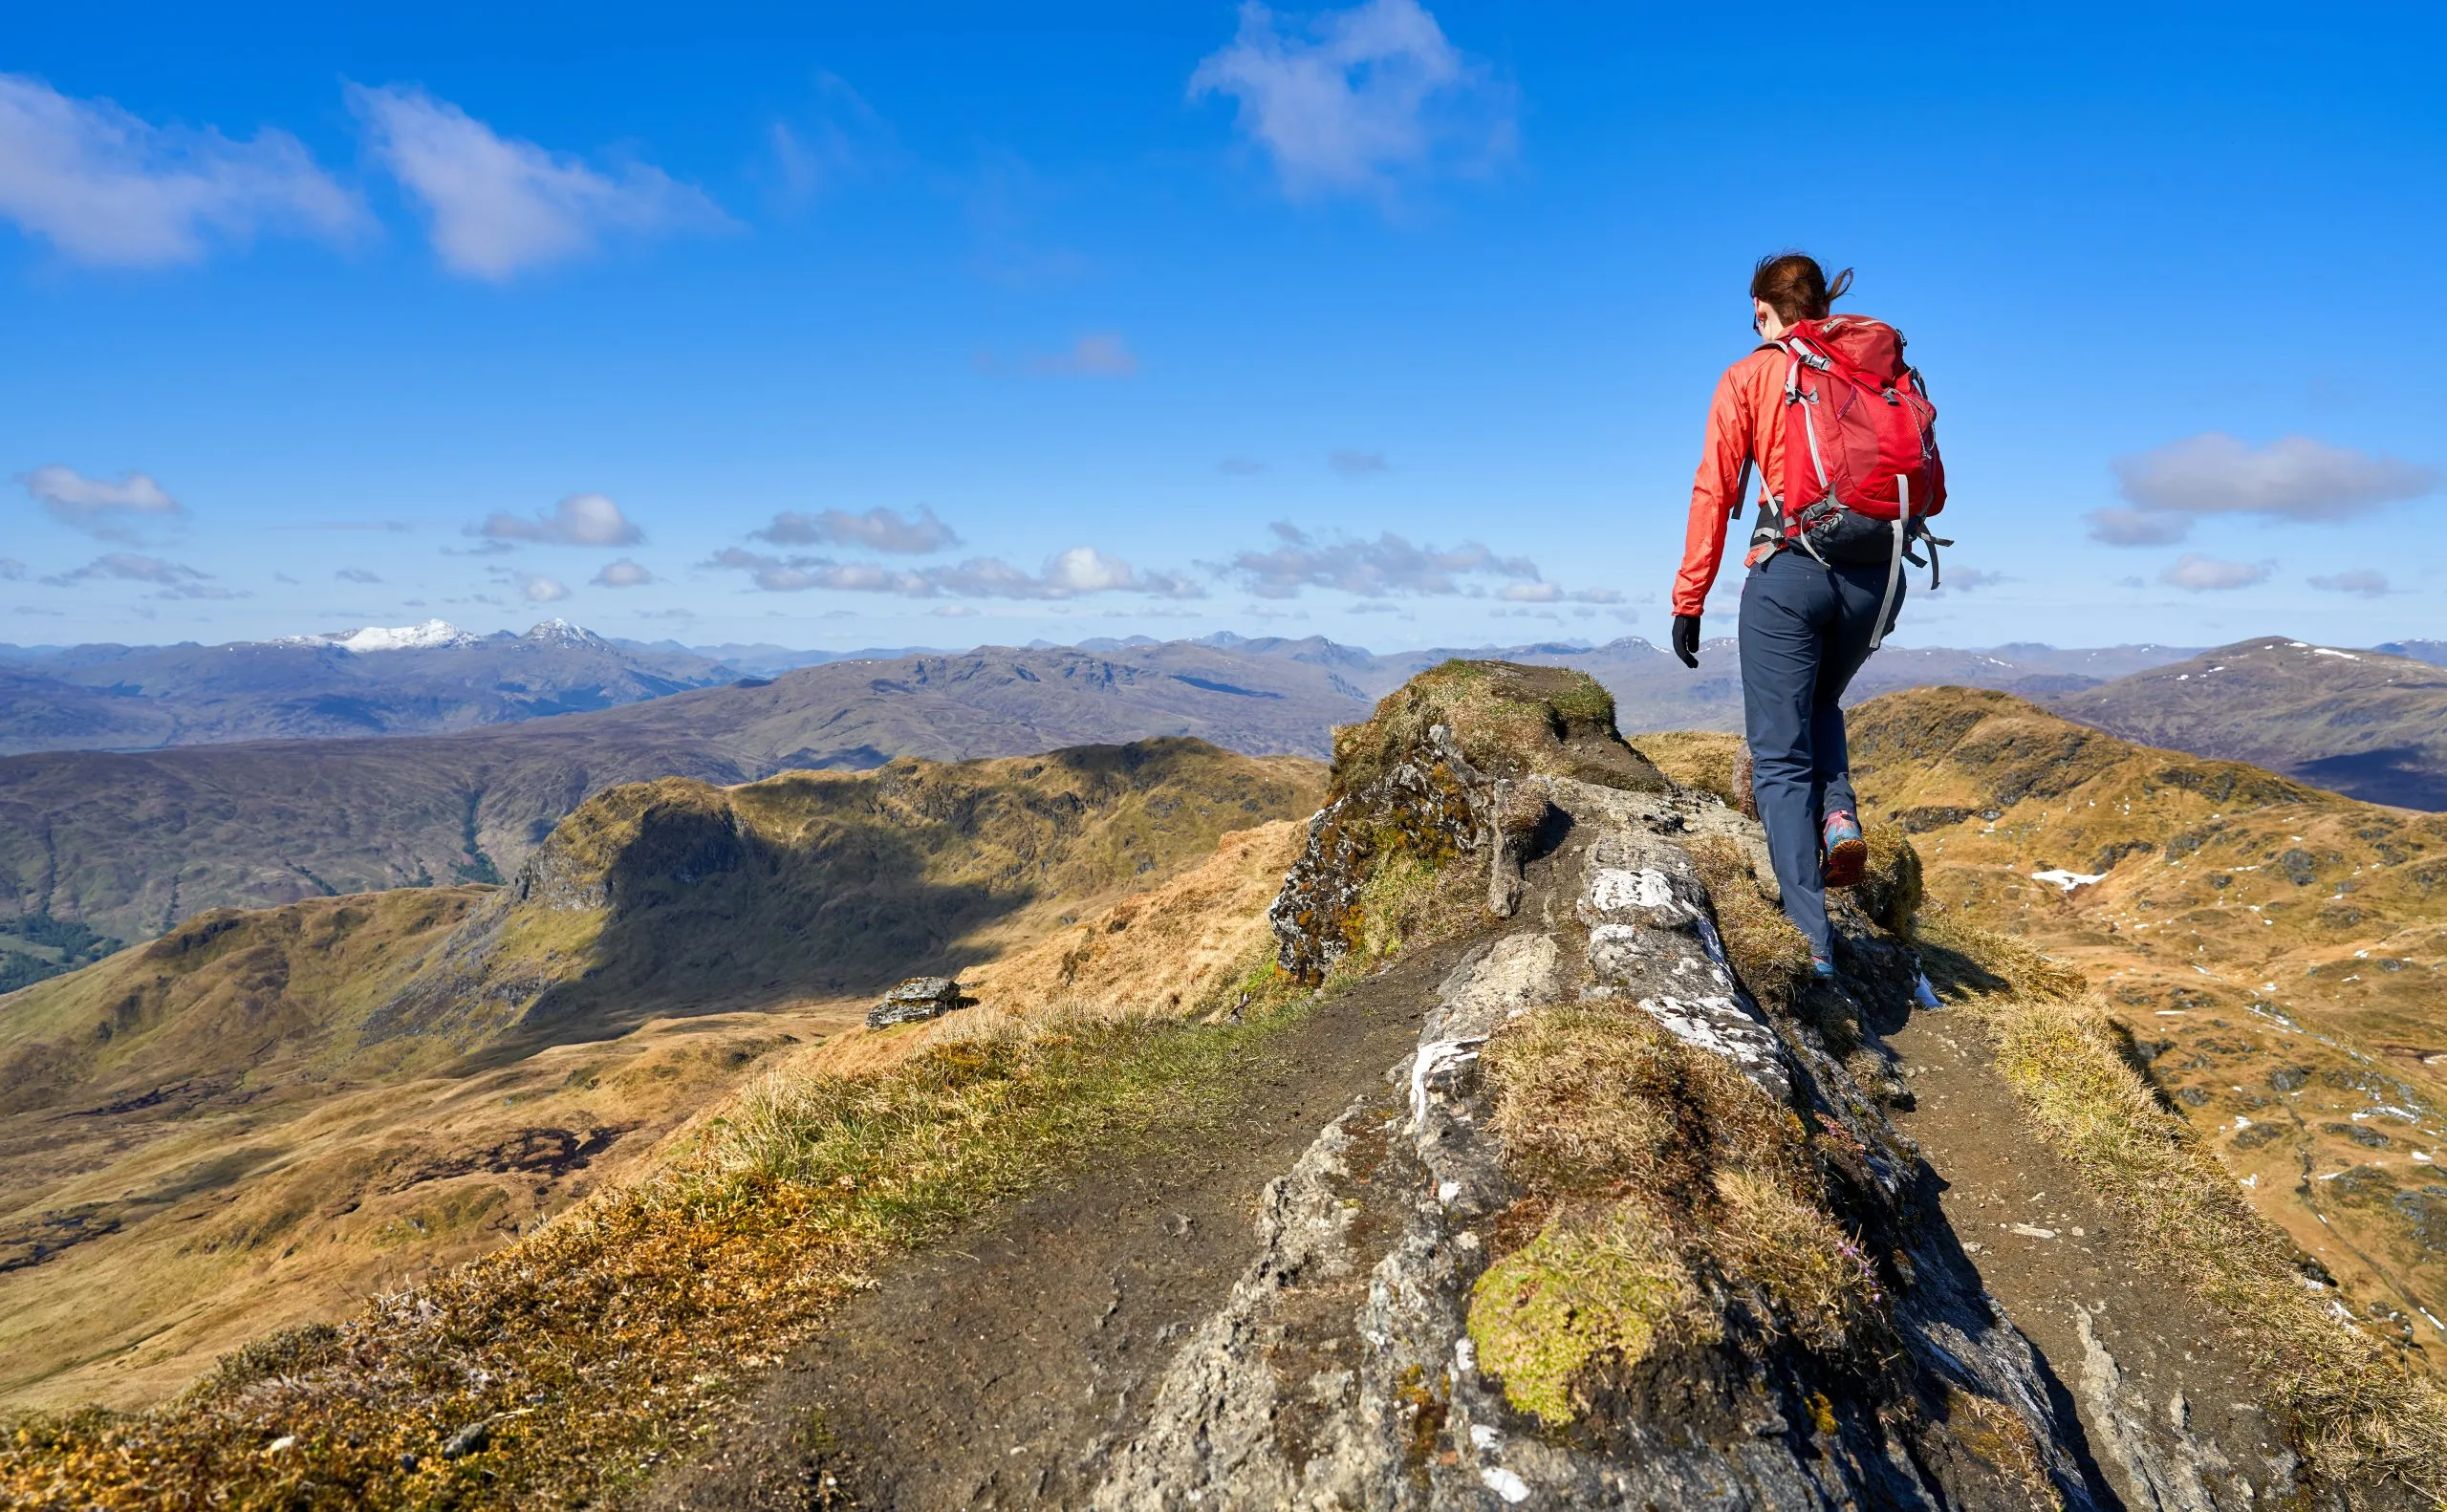 Turista kráčí po hřebeni vrcholu Meall Garbh směrem k vrcholu Beinn nan Eachan ve Skotské vysočině, Velká Británie.